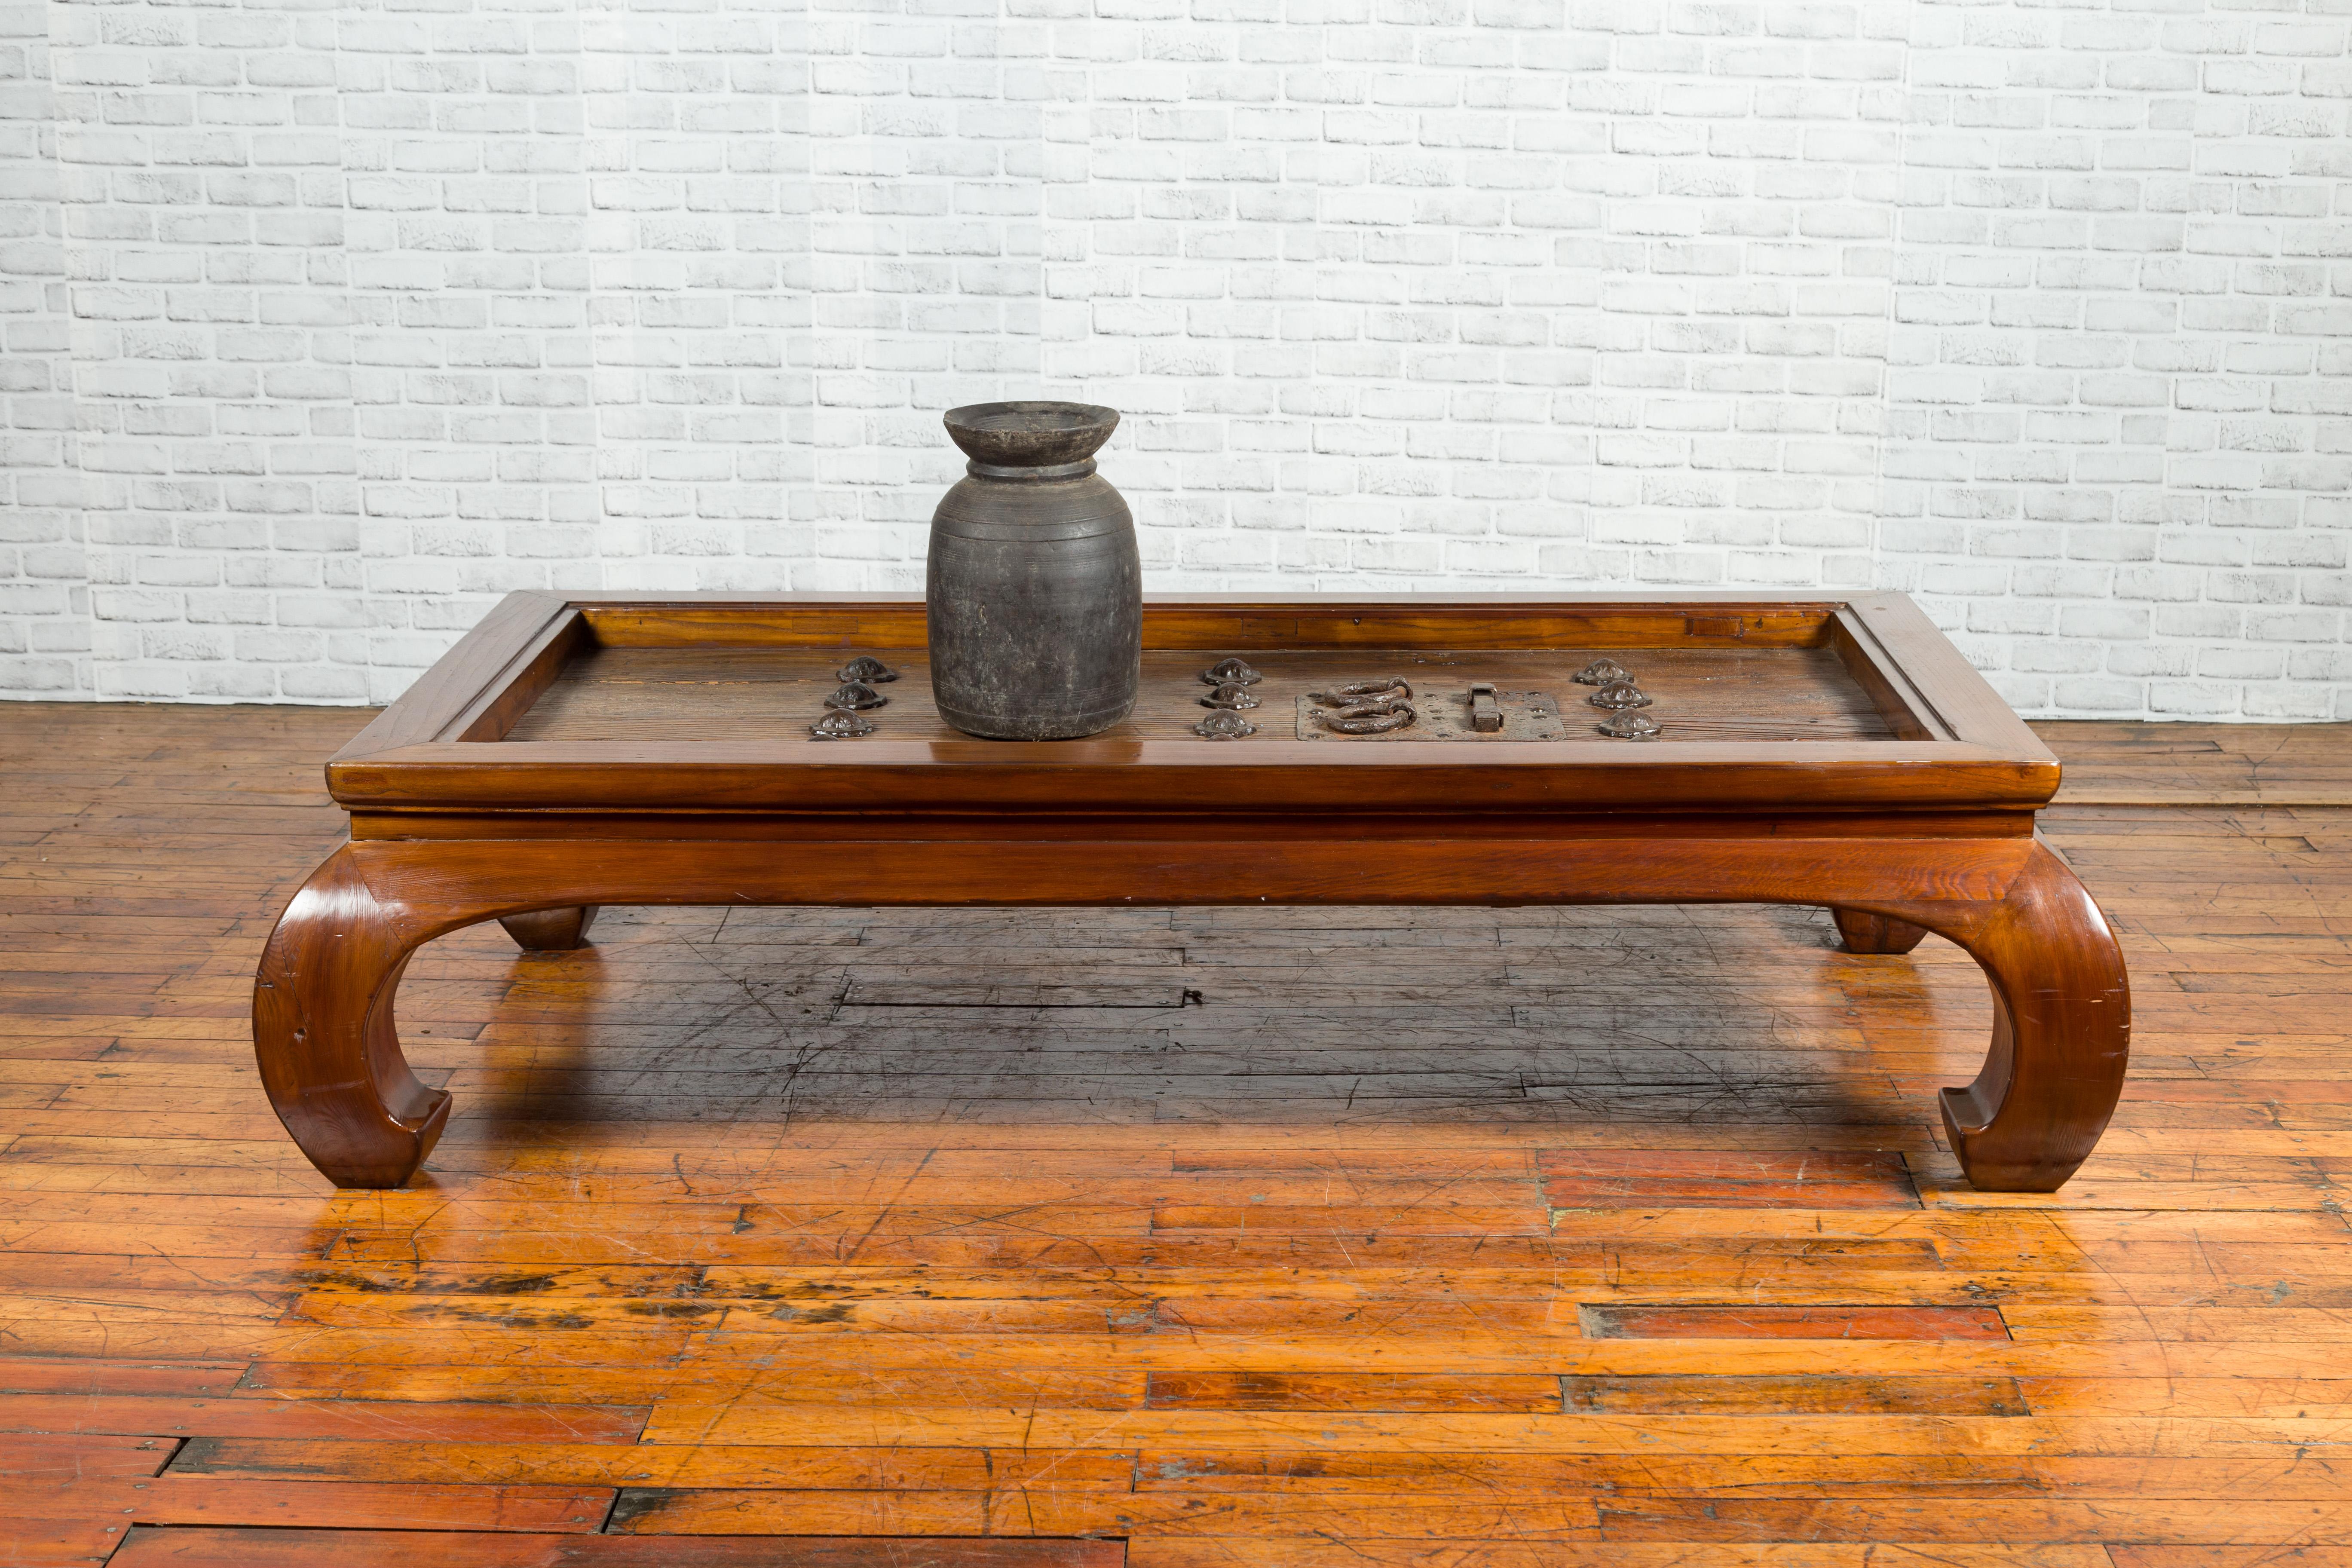 Une paire de portes en orme du 18e ou 19e siècle avec des ferrures en fer, façonnées en une grande table basse de style Ming. Créée en Chine au XVIIIe ou XIXe siècle, cette paire de portes en orme, munie d'une bonne quincaillerie en fer, a été